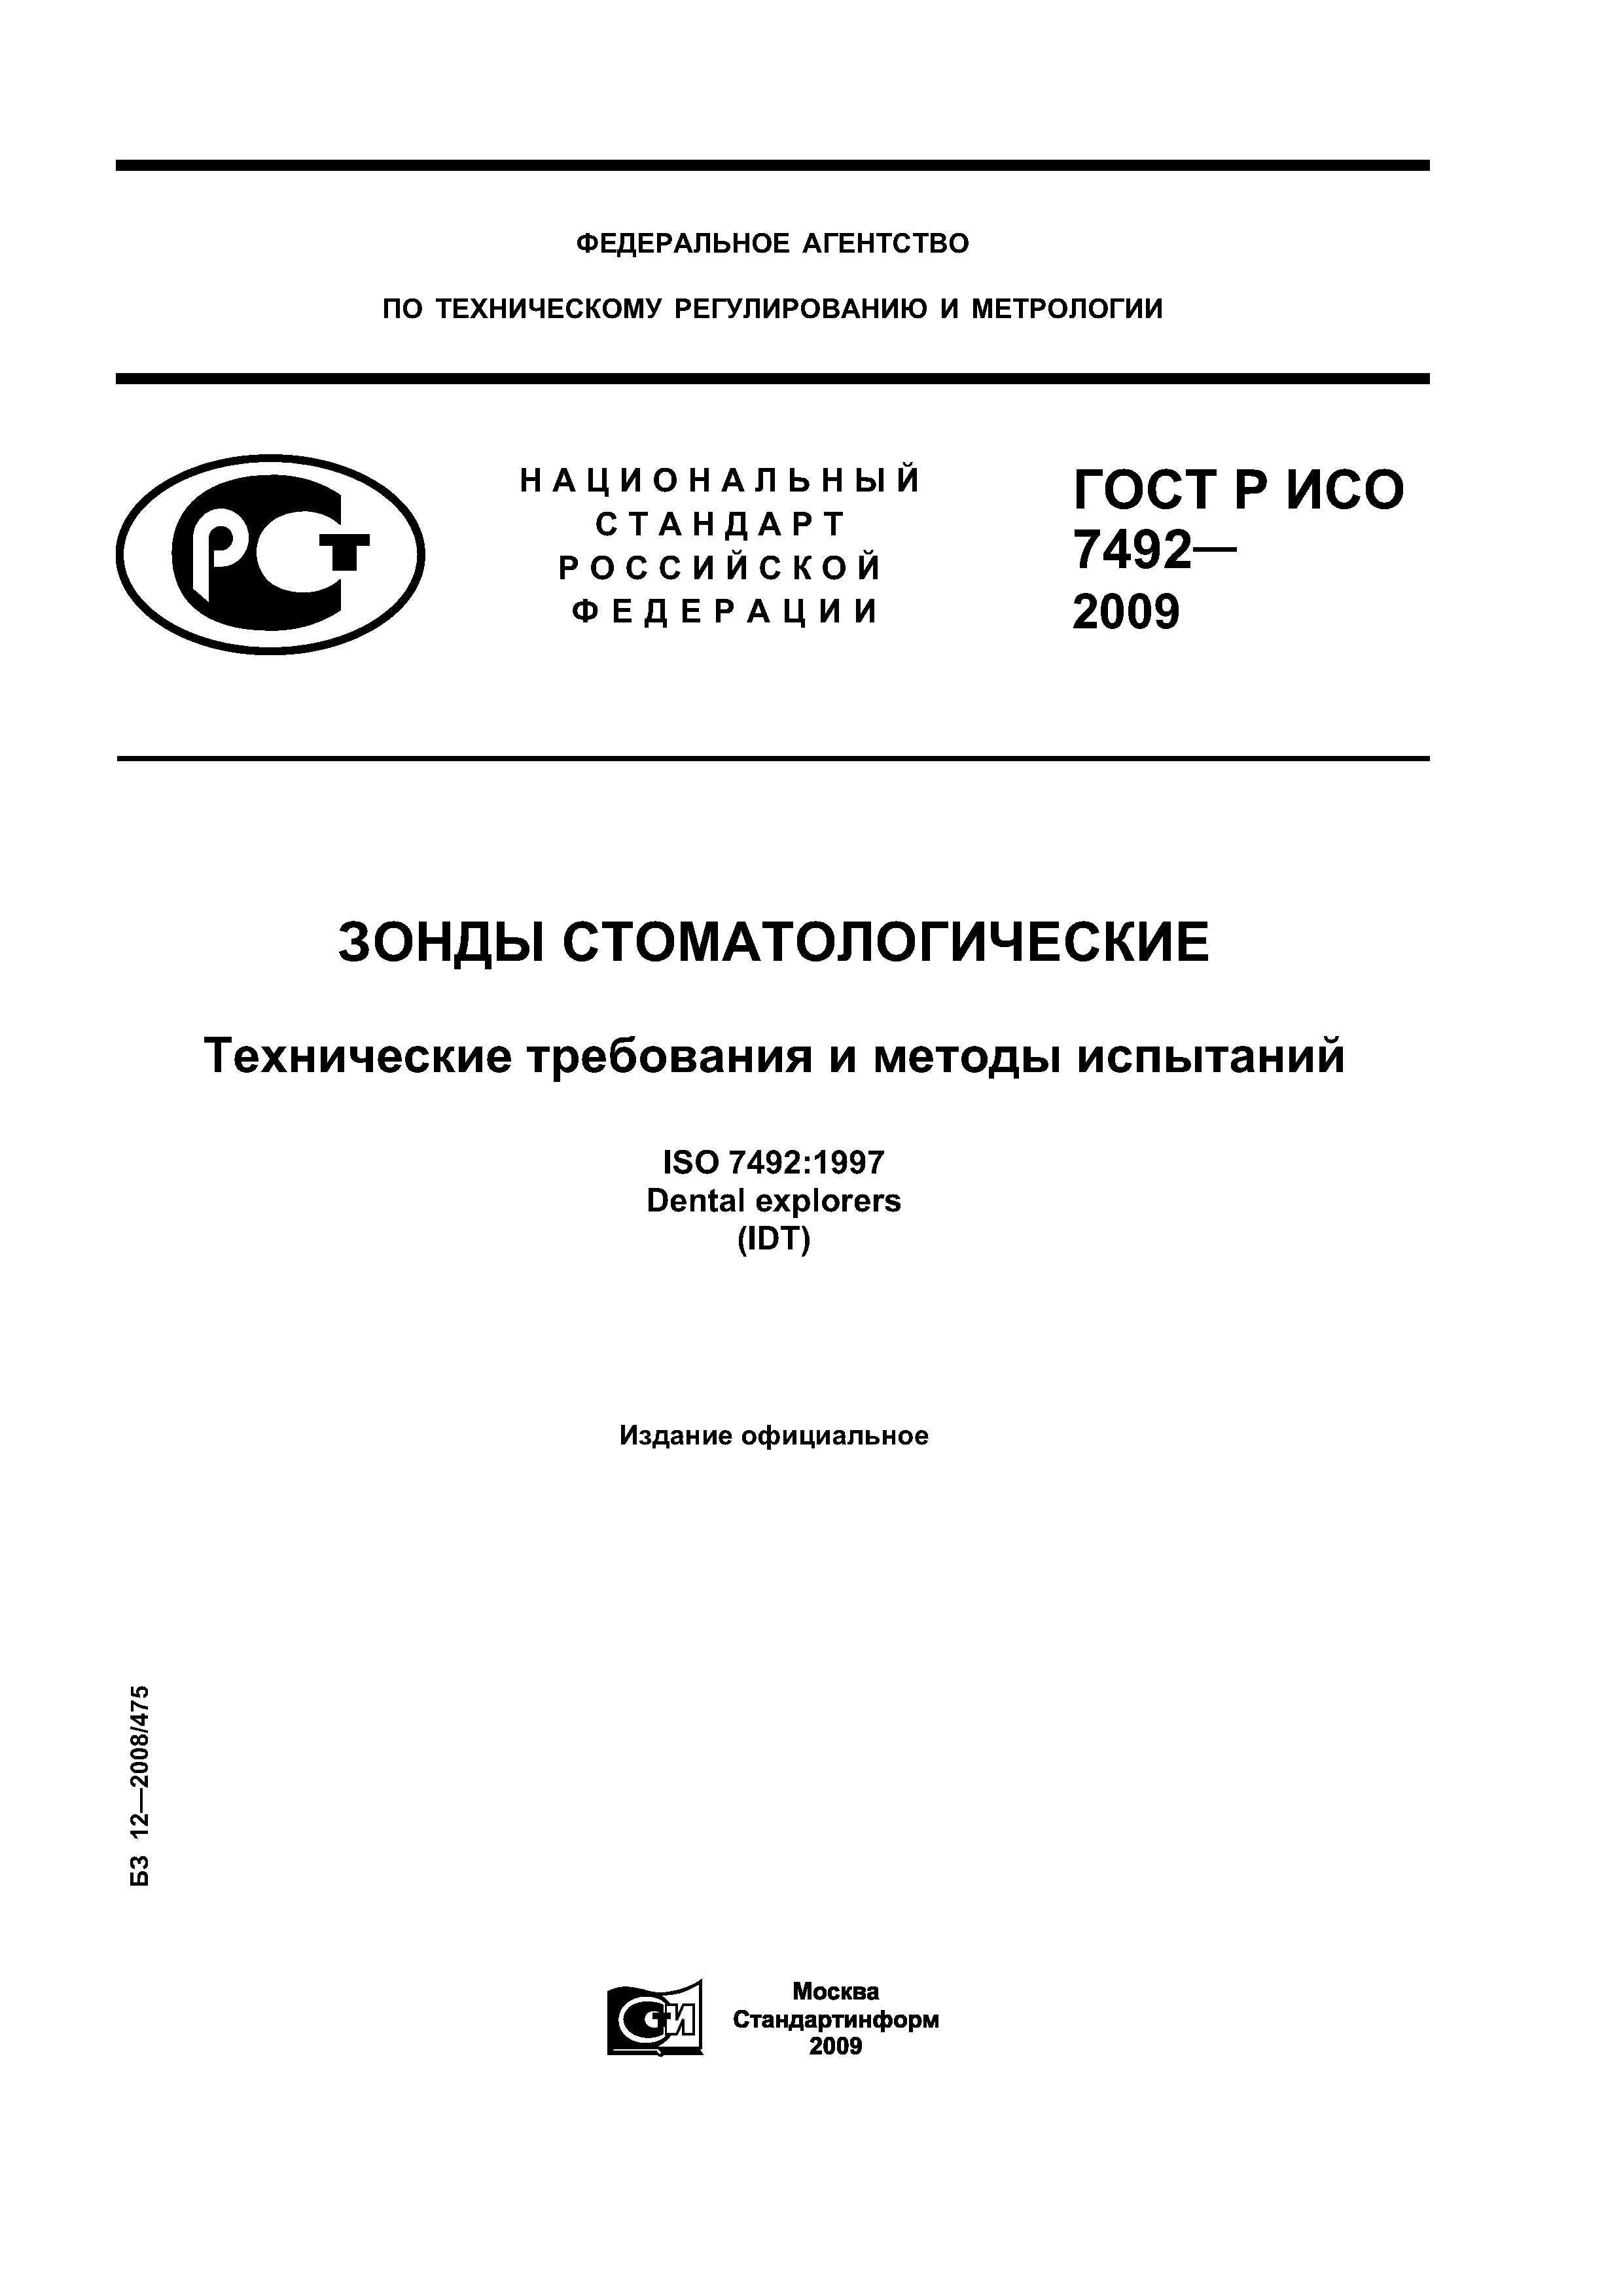 ГОСТ Р ИСО 7492-2009